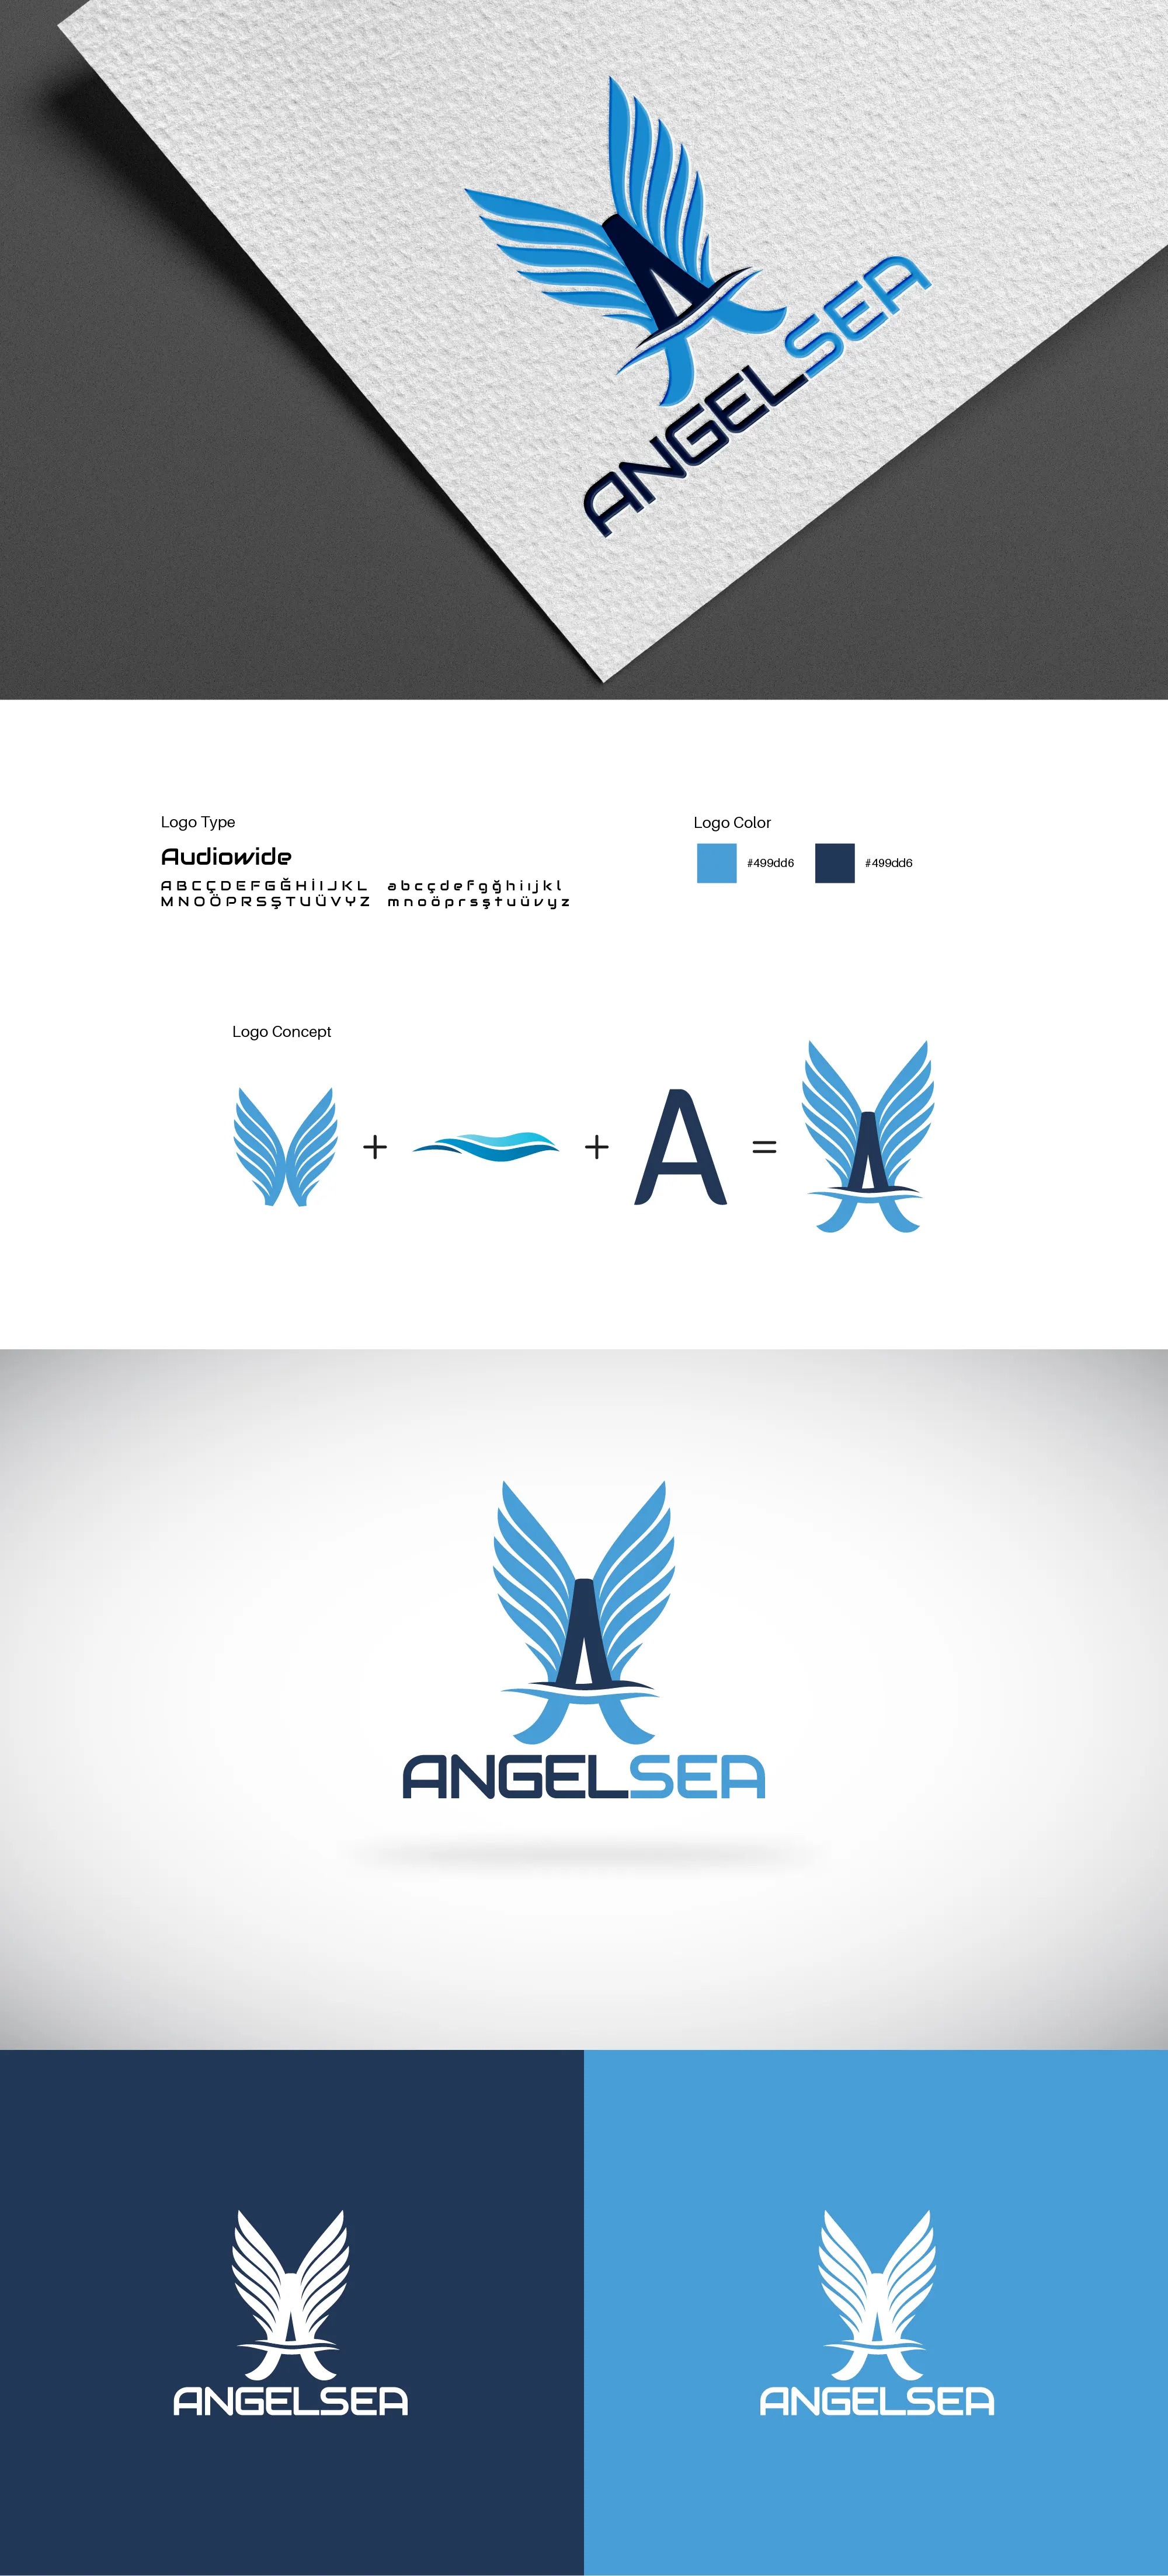 Caner Yılmaz Angelsea Logo Tasarım,Caner Yılmaz Art Director, Kurumsal Kimlik Tasarımı, Logo Tasarımı, Kartvizit Tasarımı, Zarf Tasarımı, Marka Tasarımı, Antetli Kağıt Tasarımı